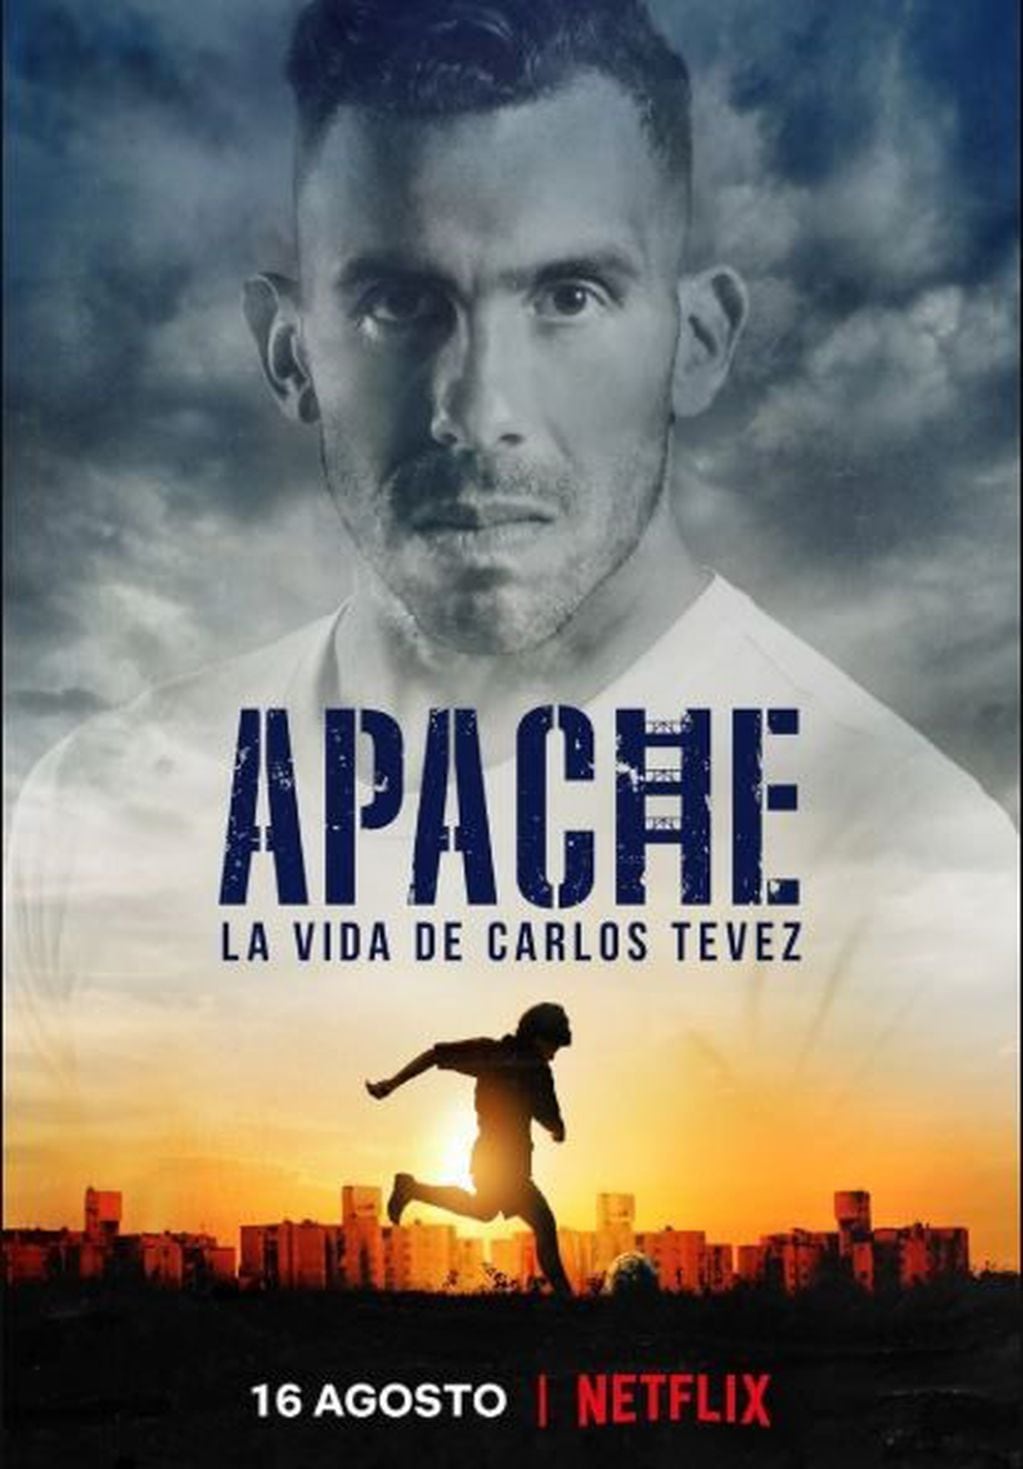 "Apache", la serie de Netflix relata la vida de Carlos Tevez con relatos del futbolista en primera persona.